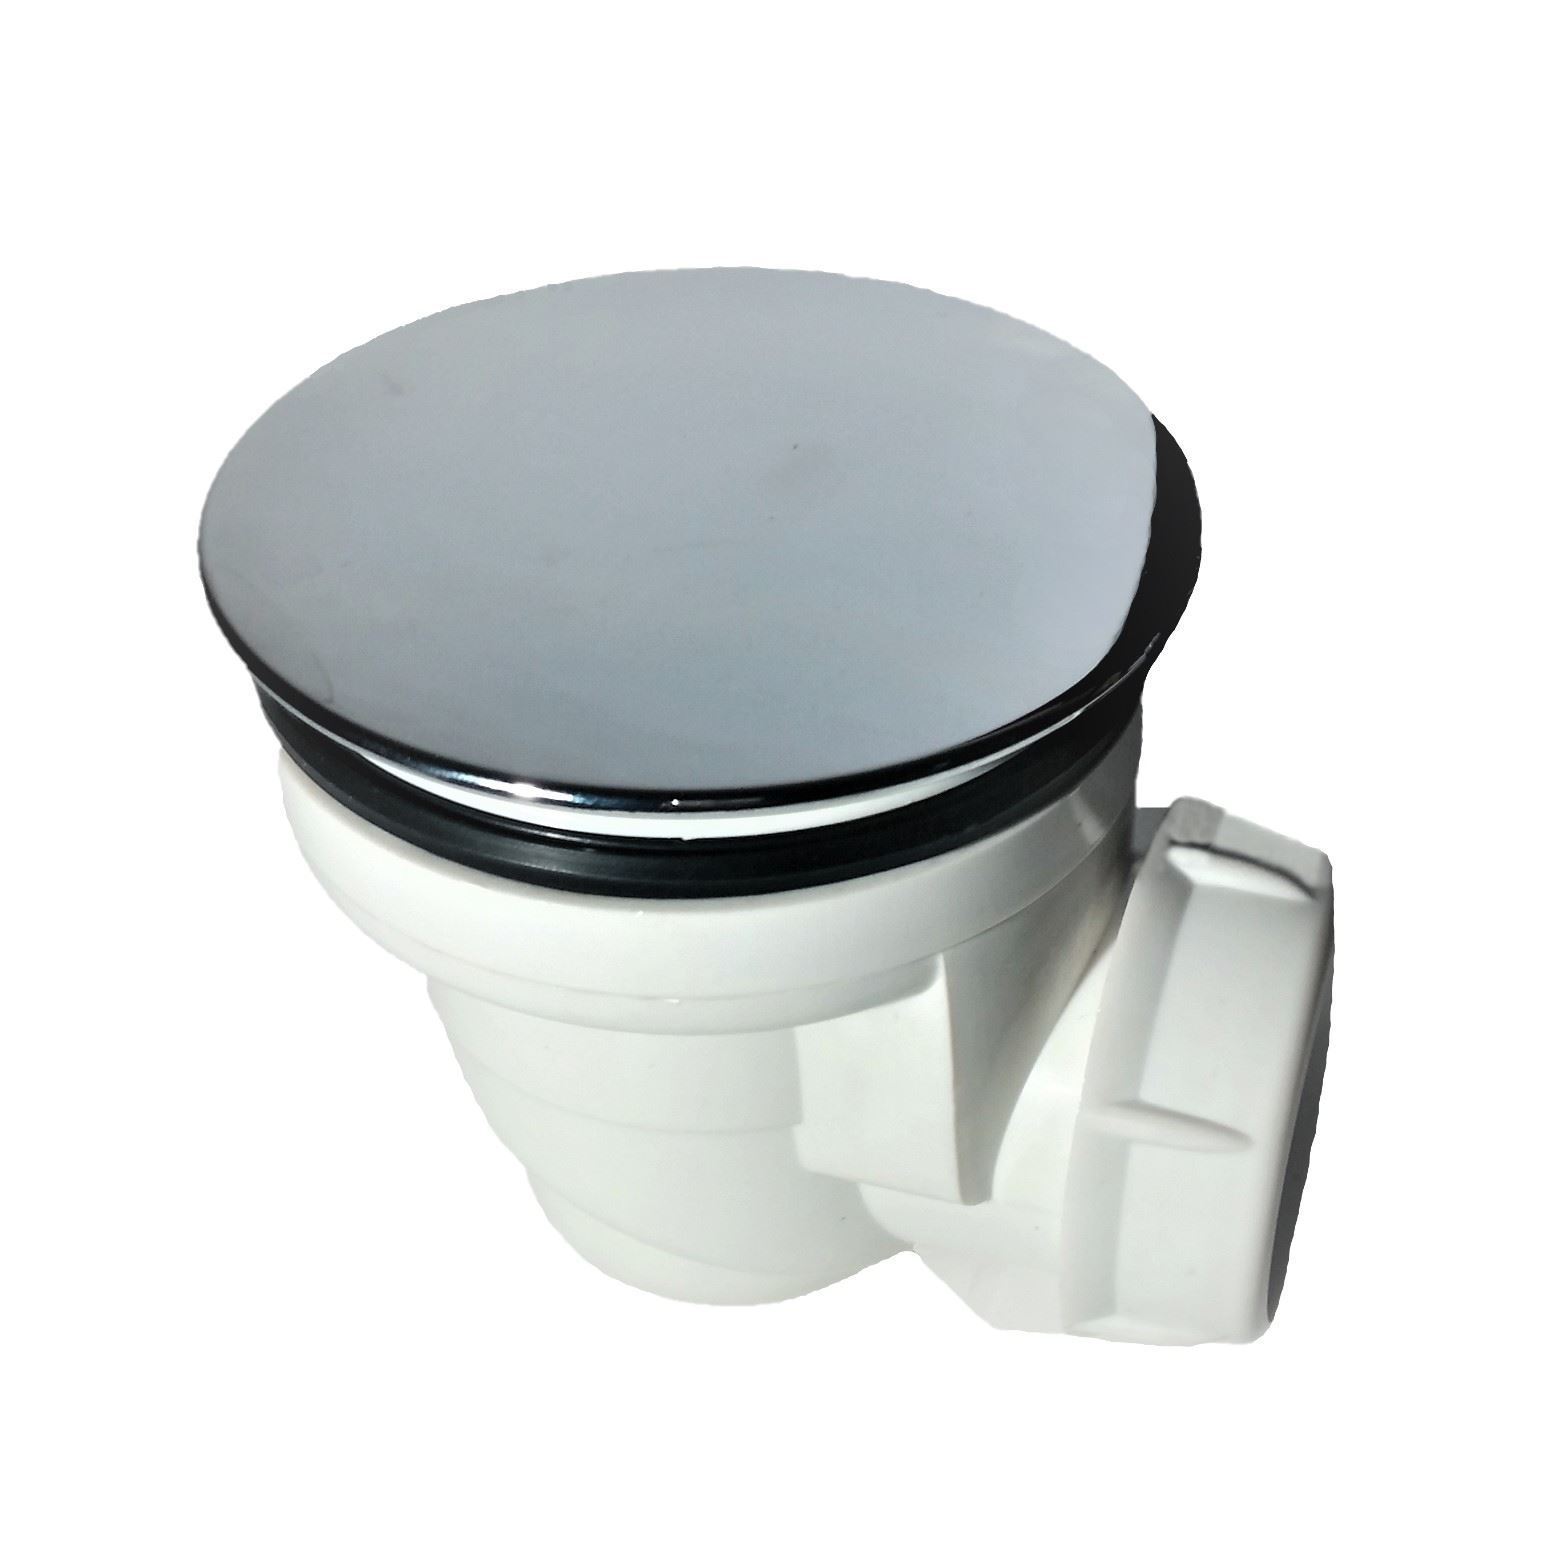 Válvula de desagüe con tapa cromada para platos de ducha de 60 mm - Imagen 1